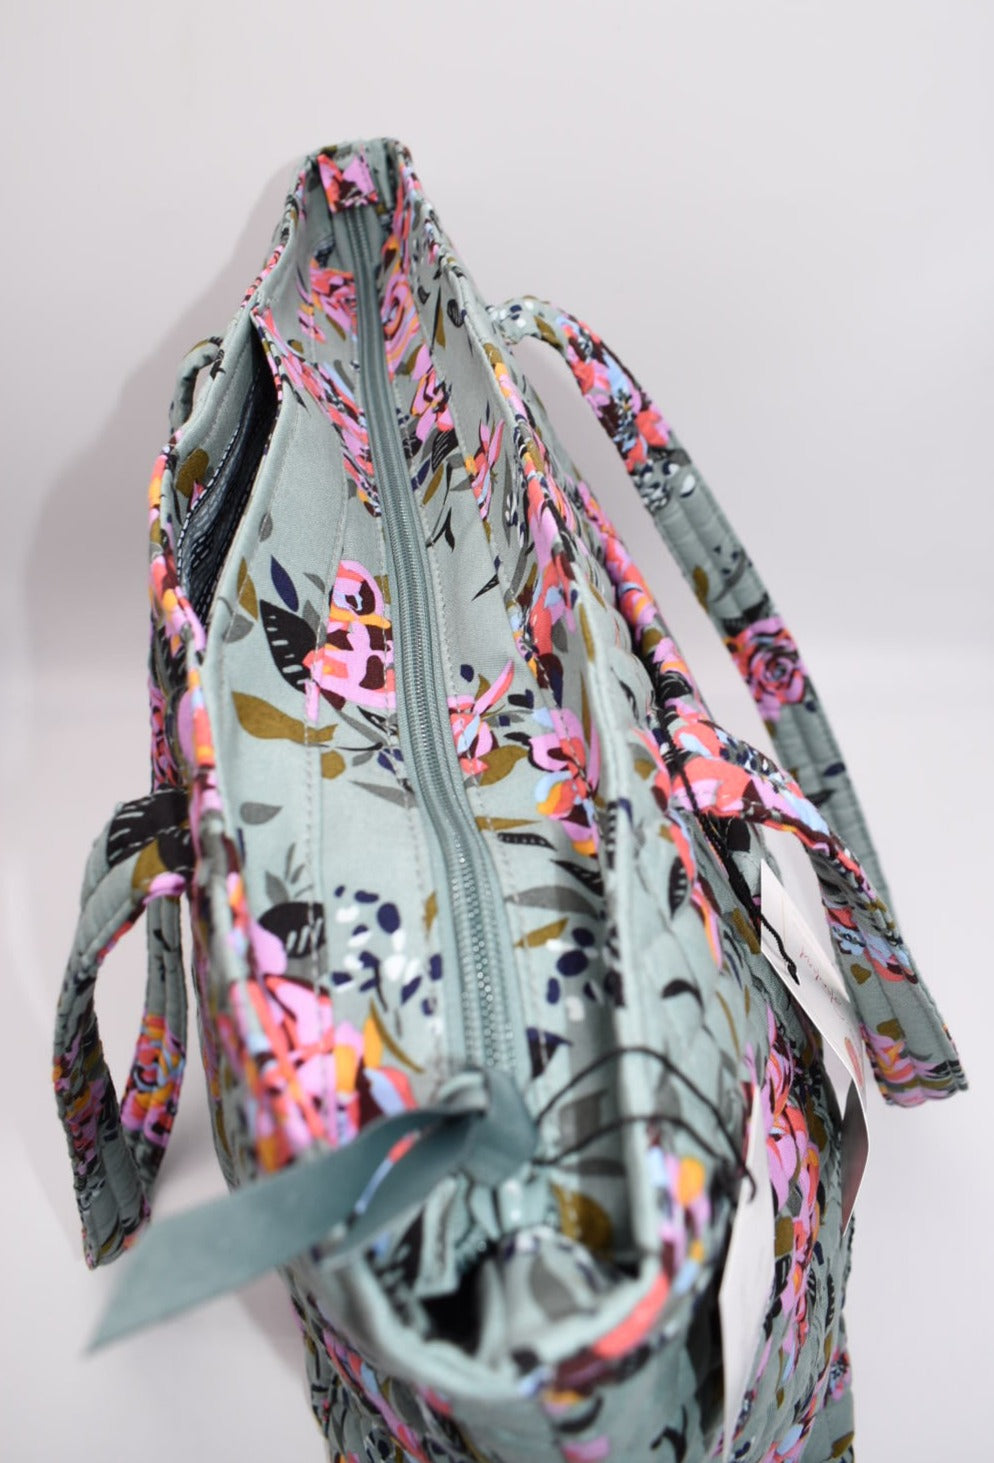 Vera Bradley Large Vera Tote Bag in "Rosy Outlook" Pattern